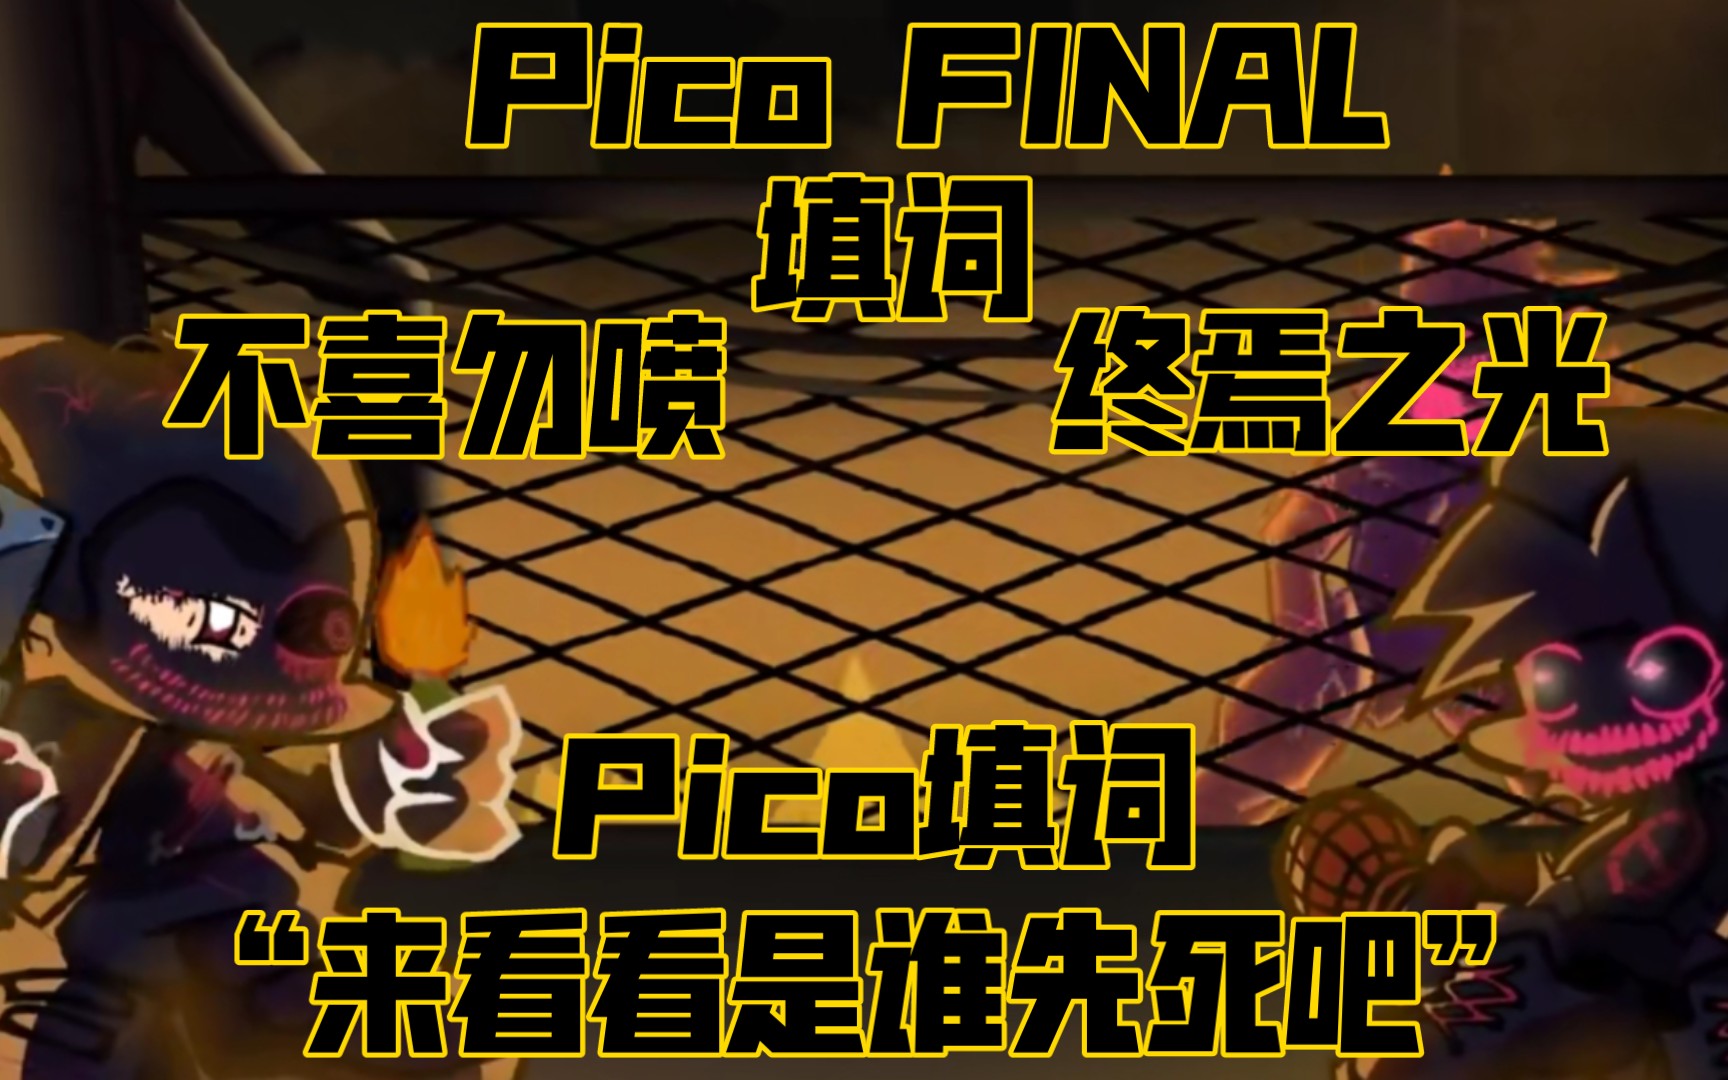 [填词]FNF终焉之光Pico Final“来看看是谁先死吧”